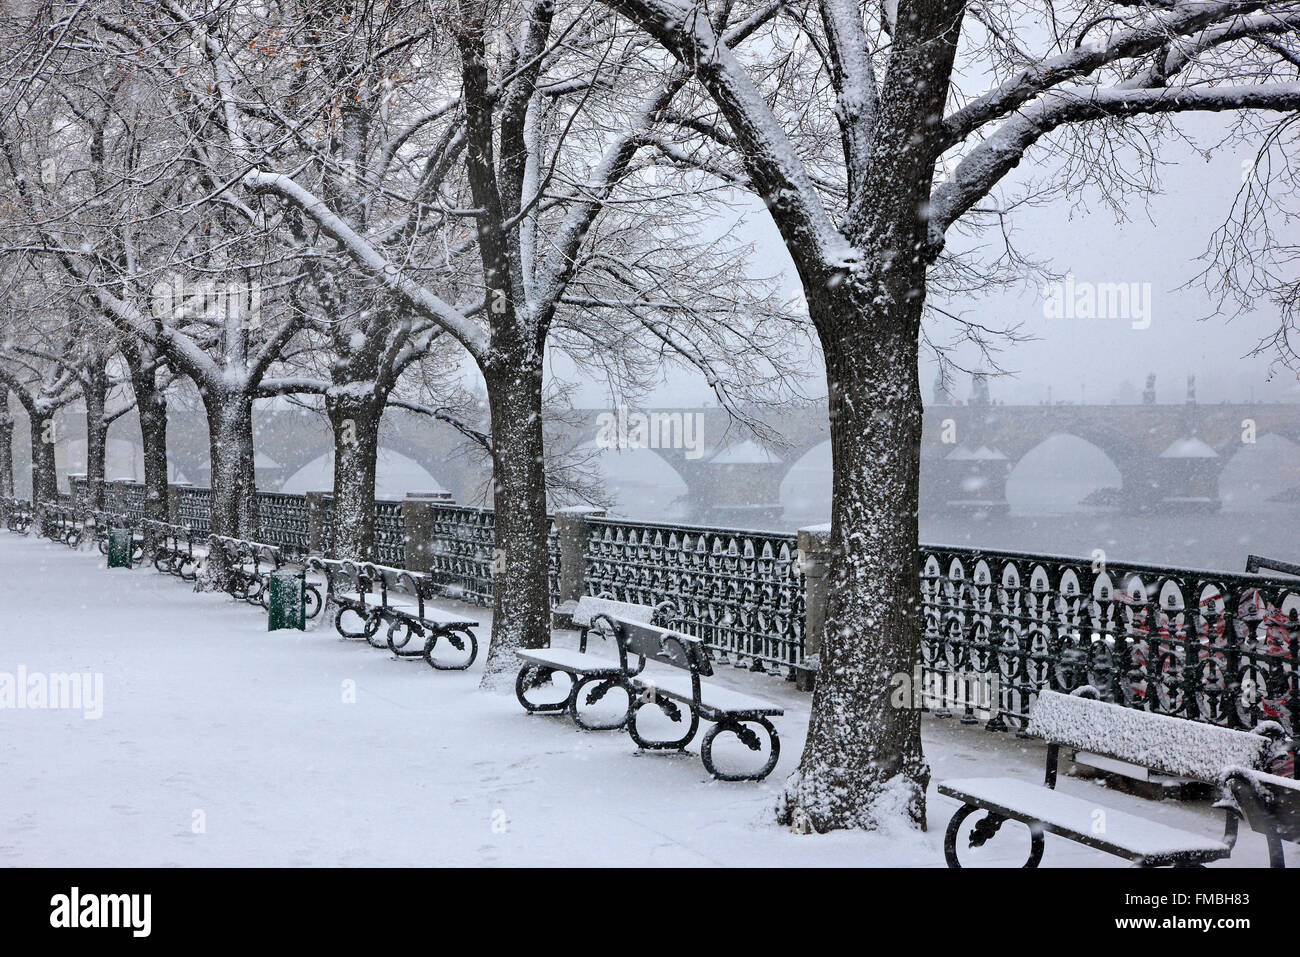 Il neige à côté de Vltava (Moldau), Prague, République tchèque. Dans l'arrière-plan vous pouvez voir le pont Charles. Banque D'Images